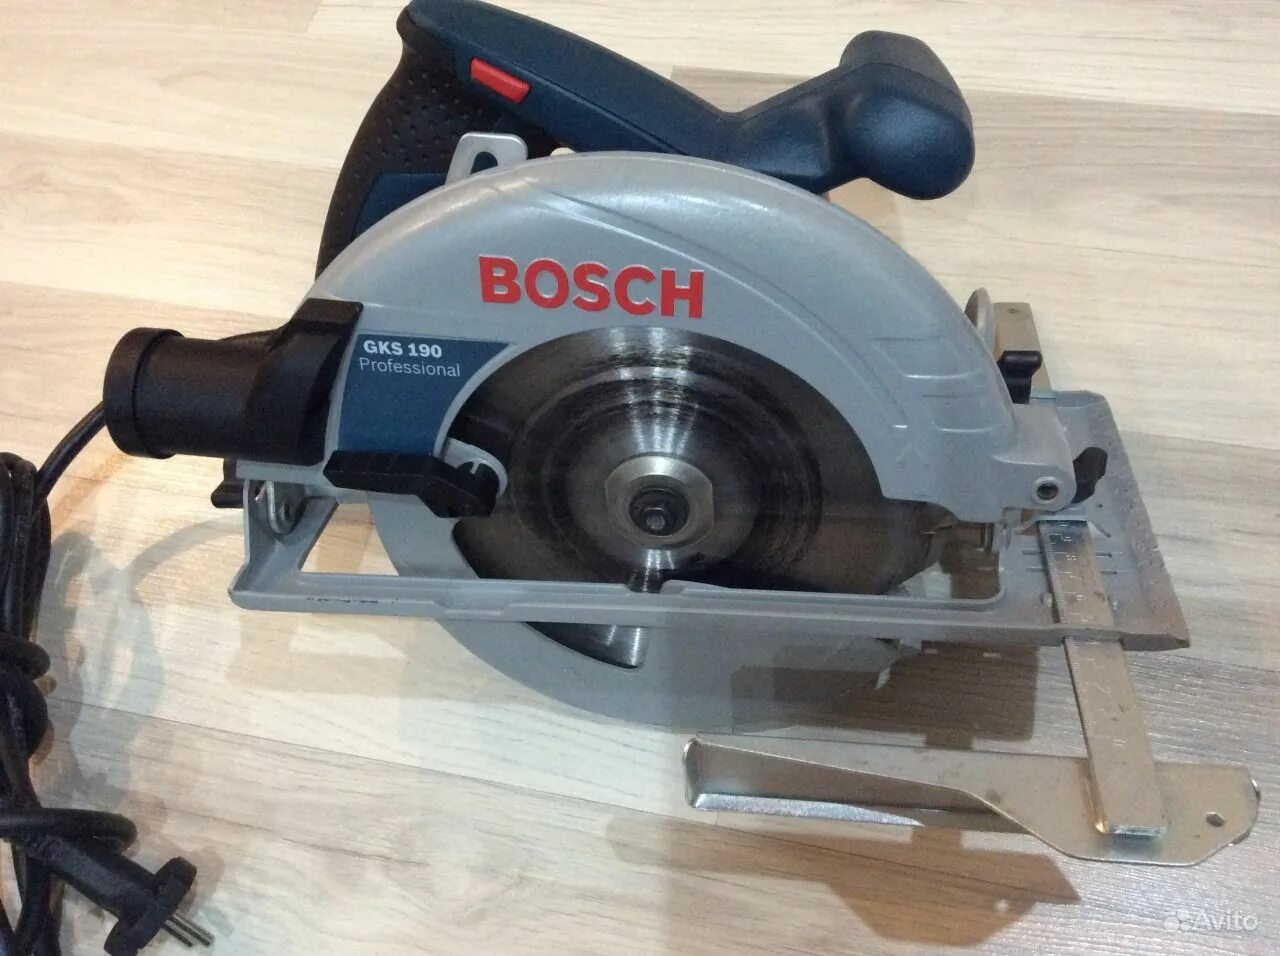 Bosch GKS 190. Bosch 190 GKS циркулярка. Церкулярная пила "Bosch" GKS 190. Bosch GKS 190, 1400 Вт. Циркулярная пила bosch 190